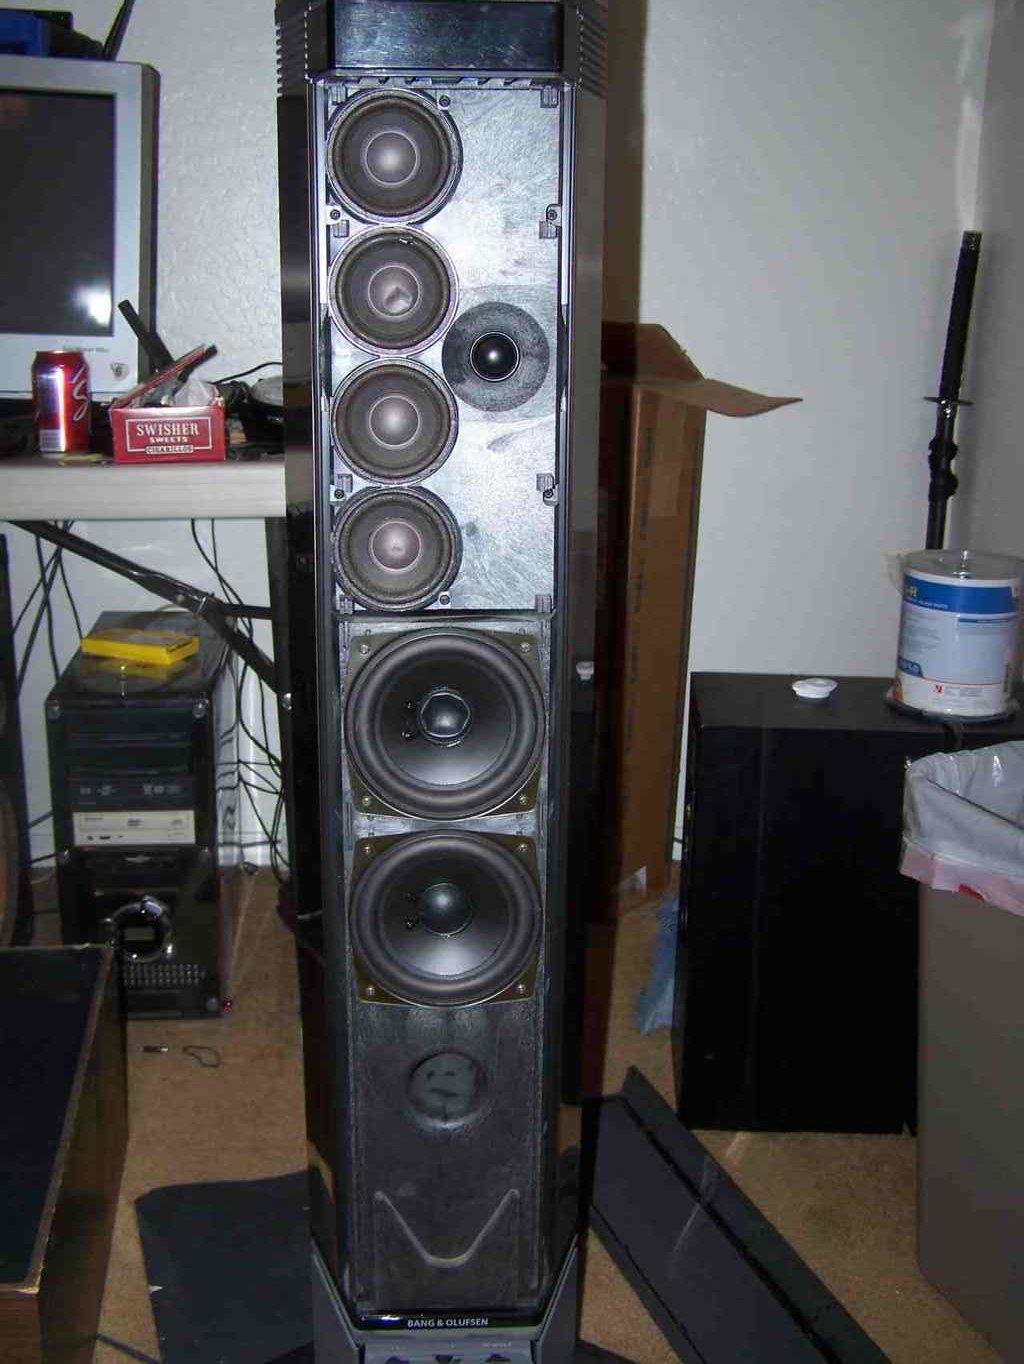 bang & olufsen tower speakers